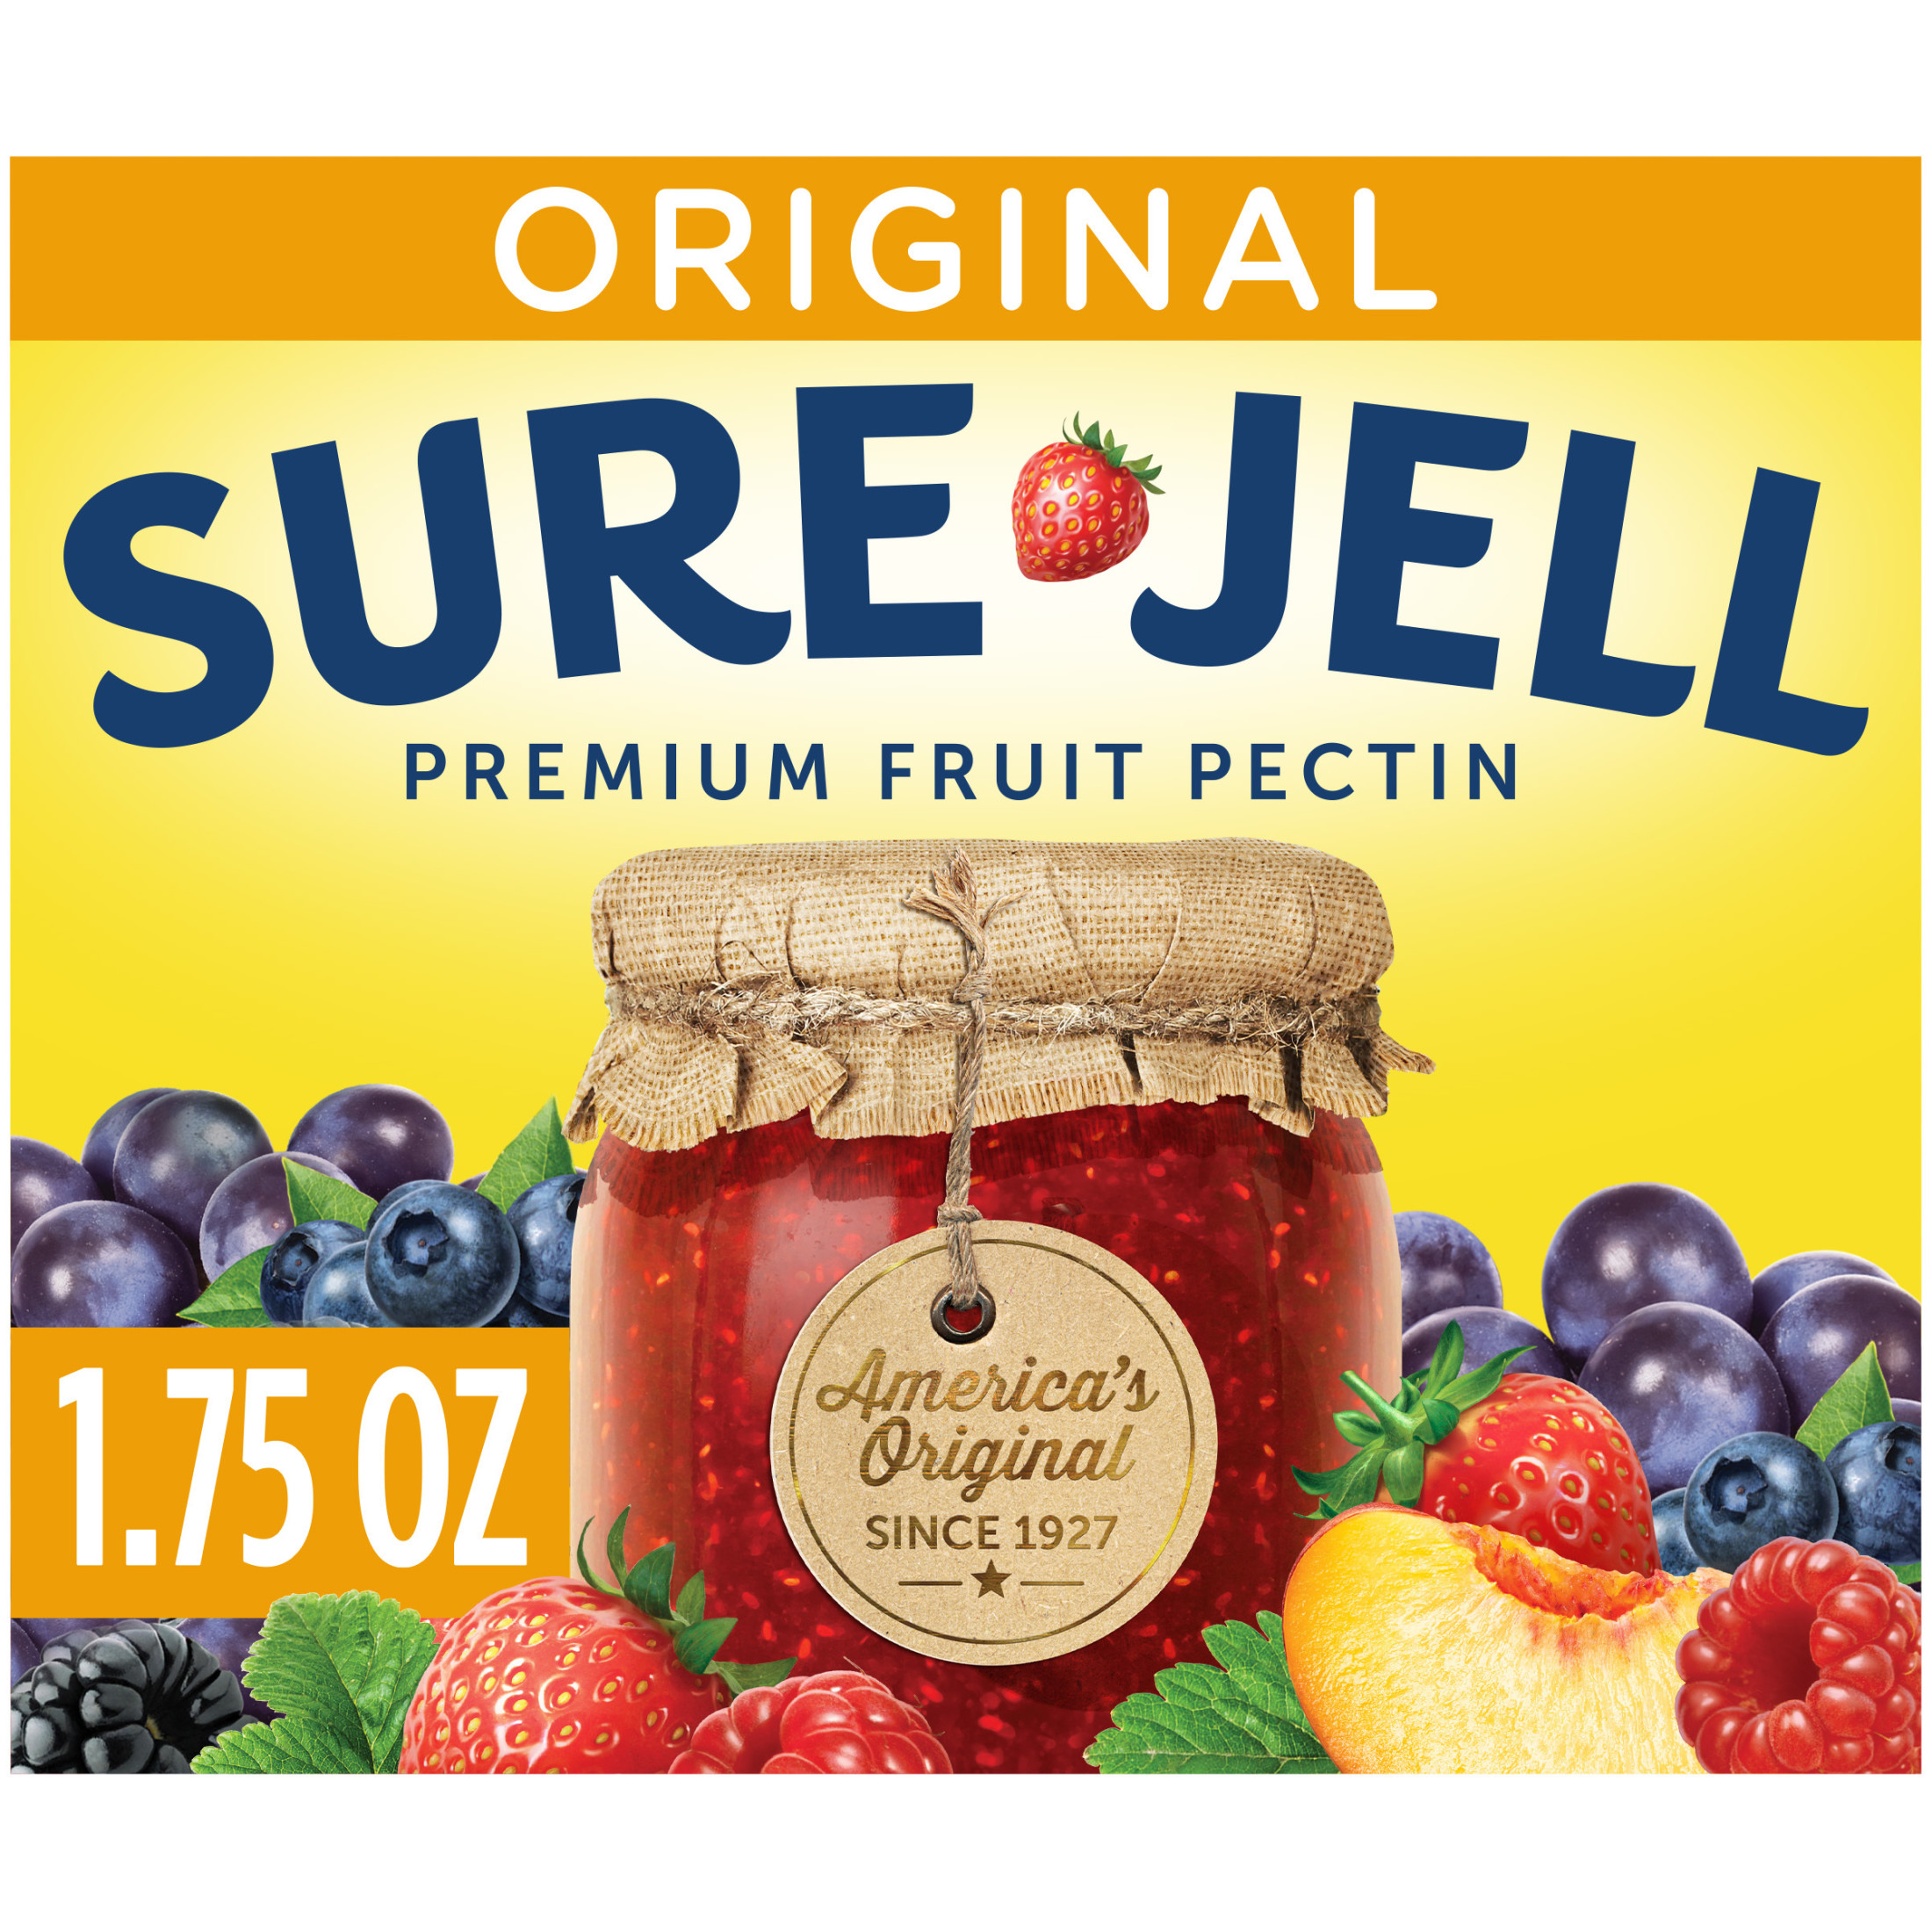 Sure Jell Original Premium Fruit Pectin, 1.75 oz Box - image 1 of 10